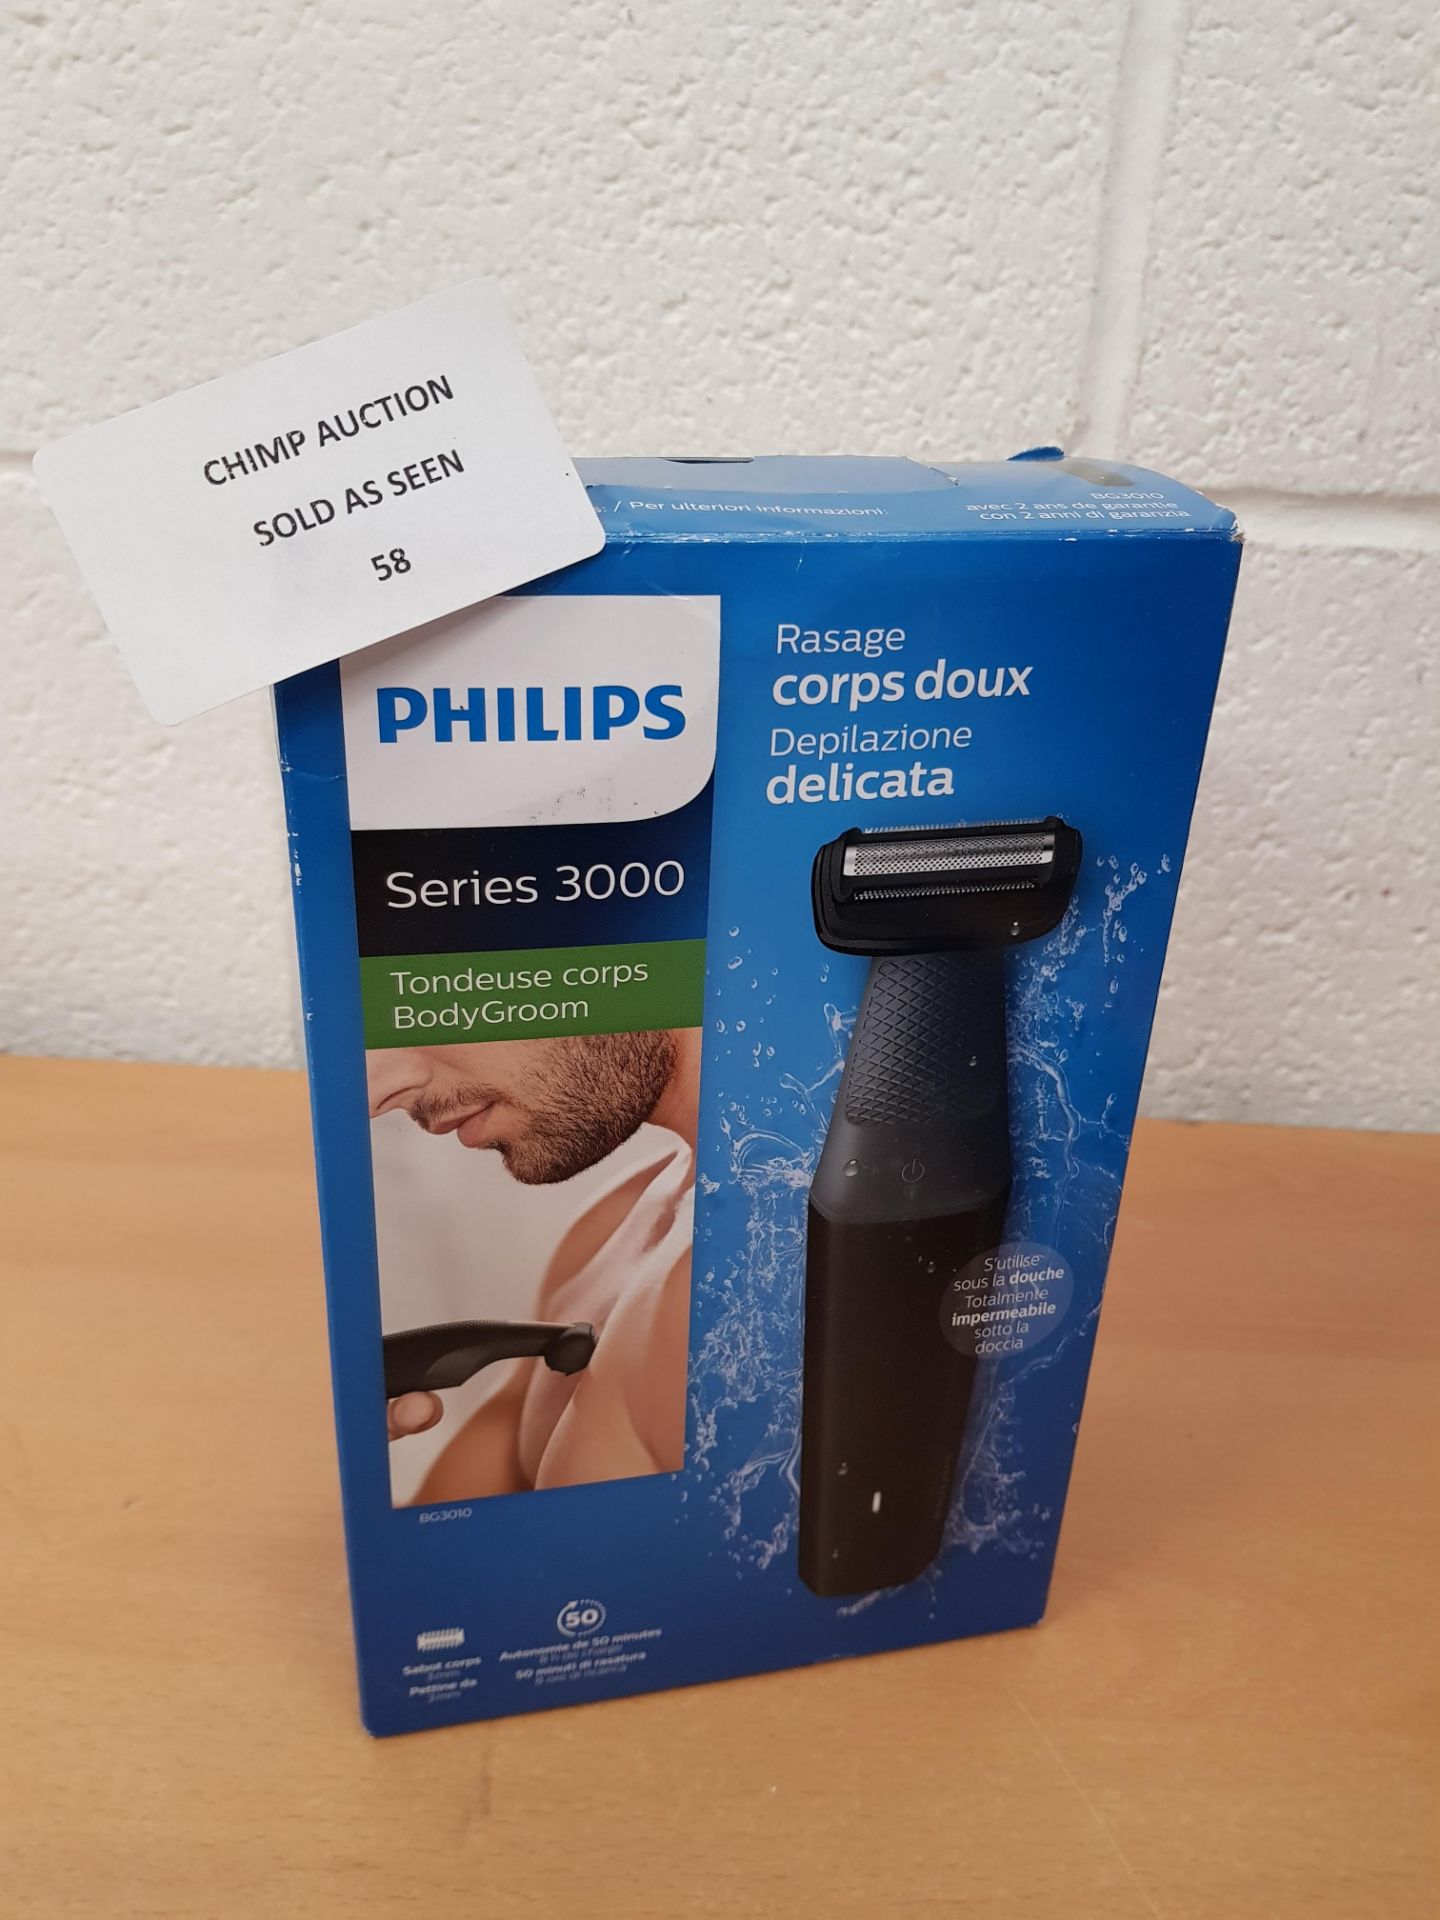 Philips Series 3000 Showerproof Body Groomer - BG3010.